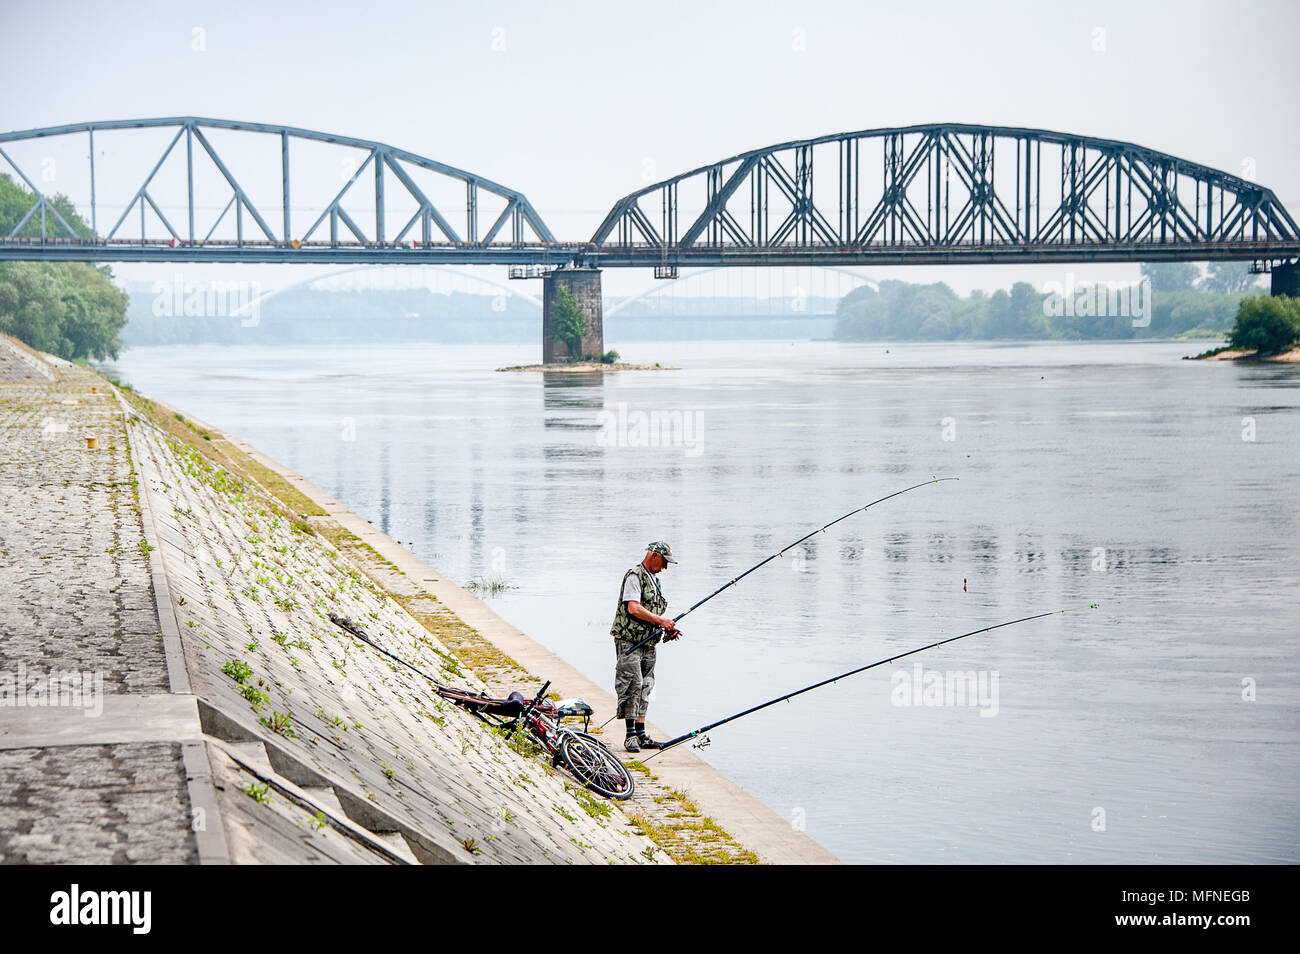 Poissons l'homme sur les rives de la Vistule à Torun, Pologne. Paysage brumeux avec le Josef Pilsudski bridge en arrière-plan Banque D'Images